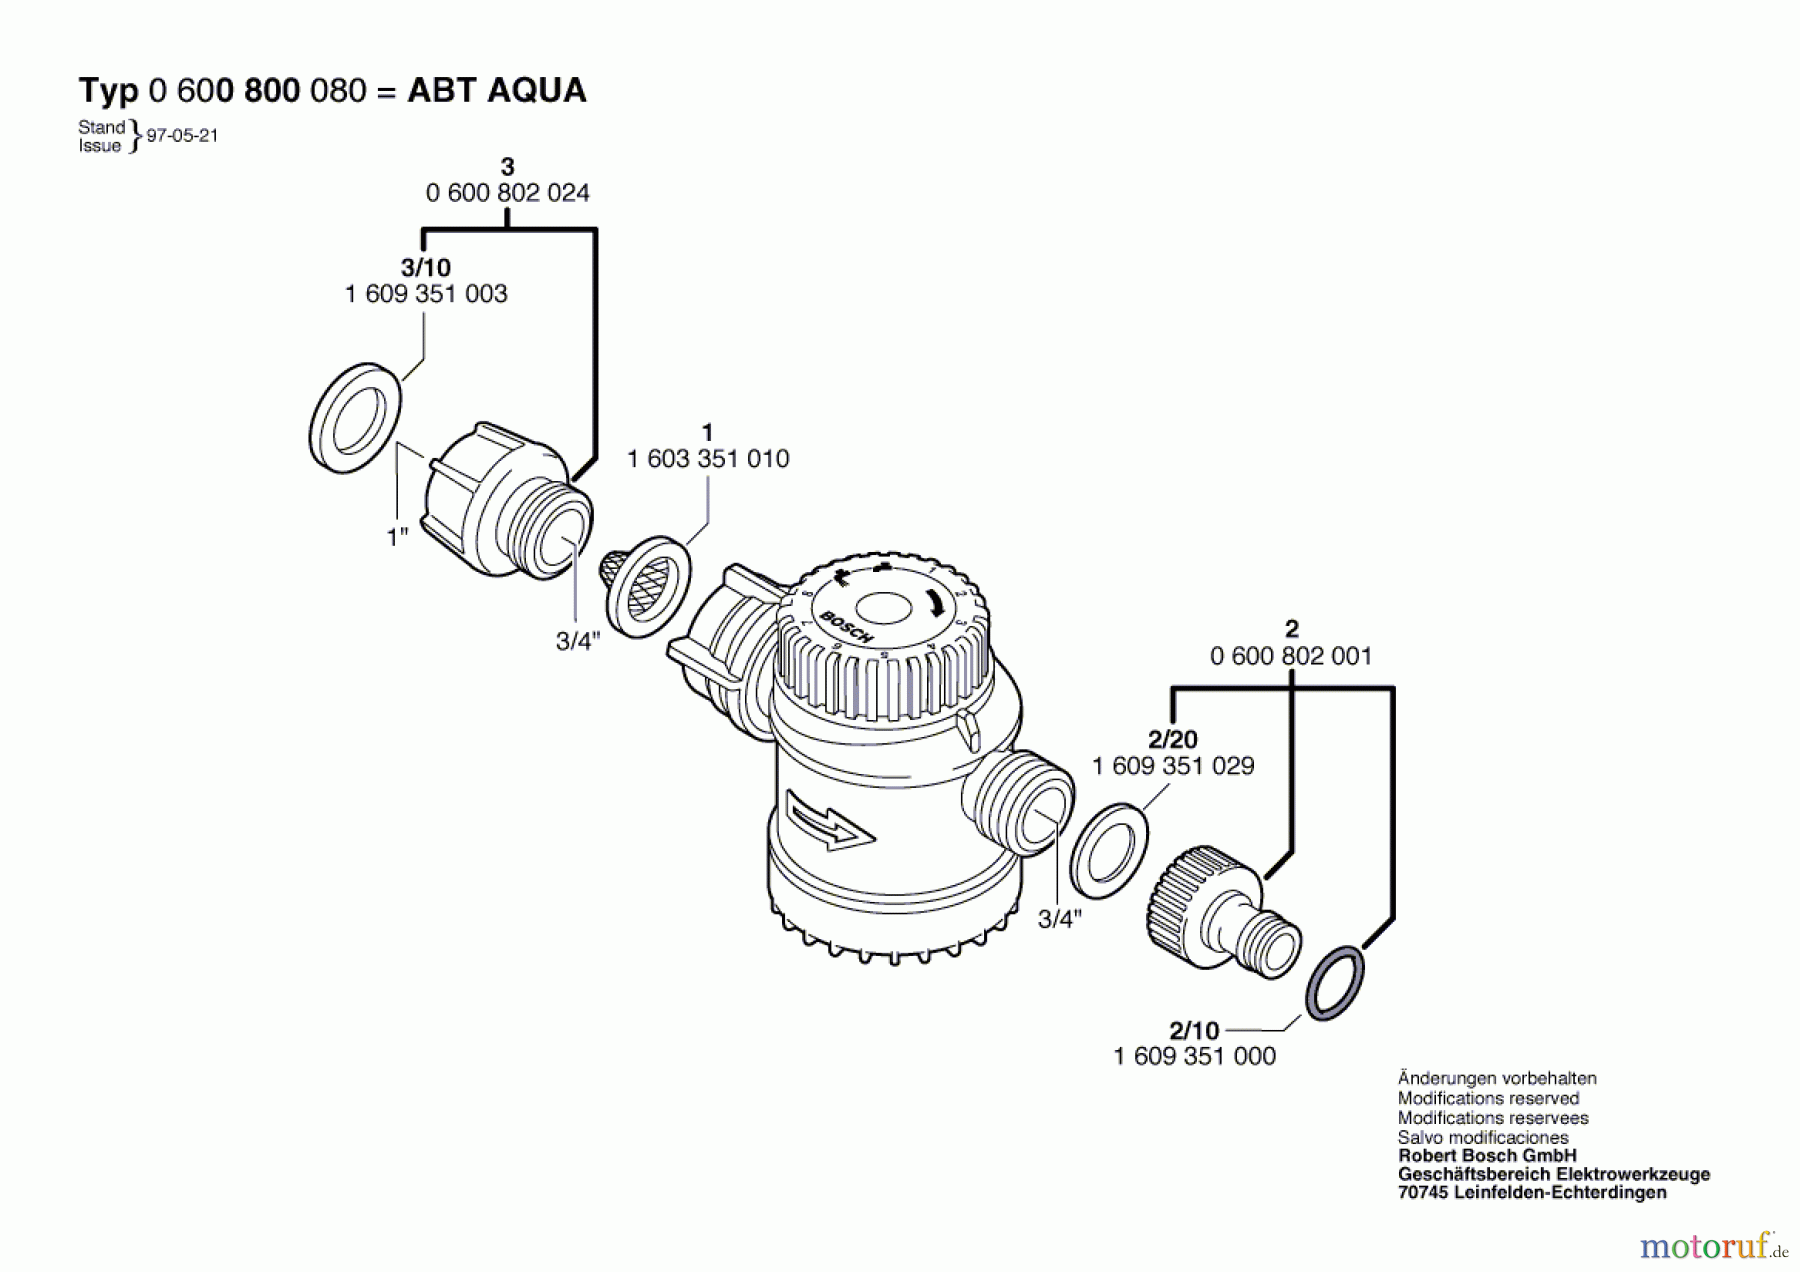  Bosch Wassertechnik Wasseruhr ABT AQUA-CONTROL Seite 1